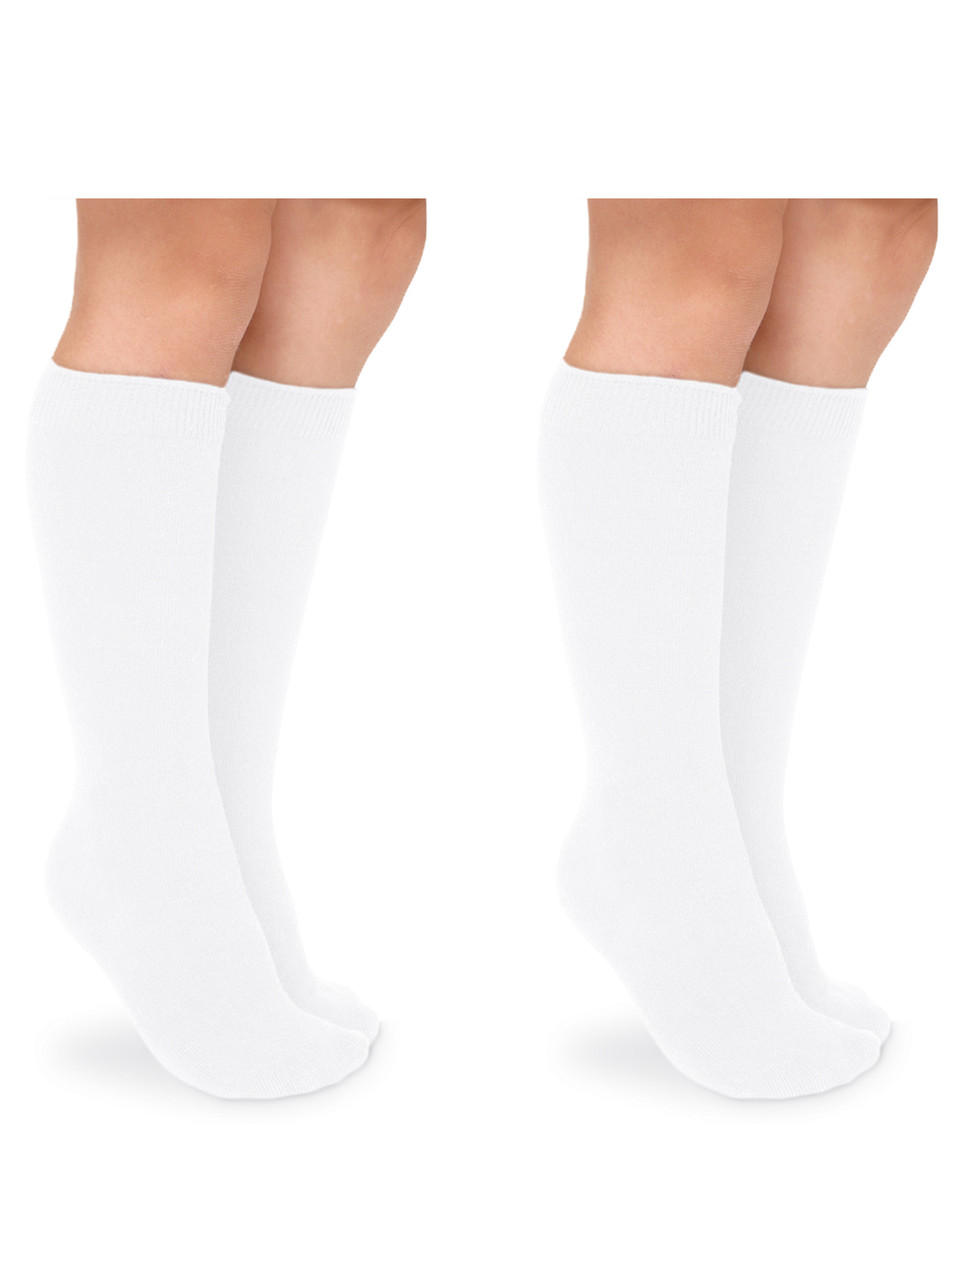 Jefferies Socks Knee High 2 Pairs Socks 1600 in White - SnapdragonsBaby